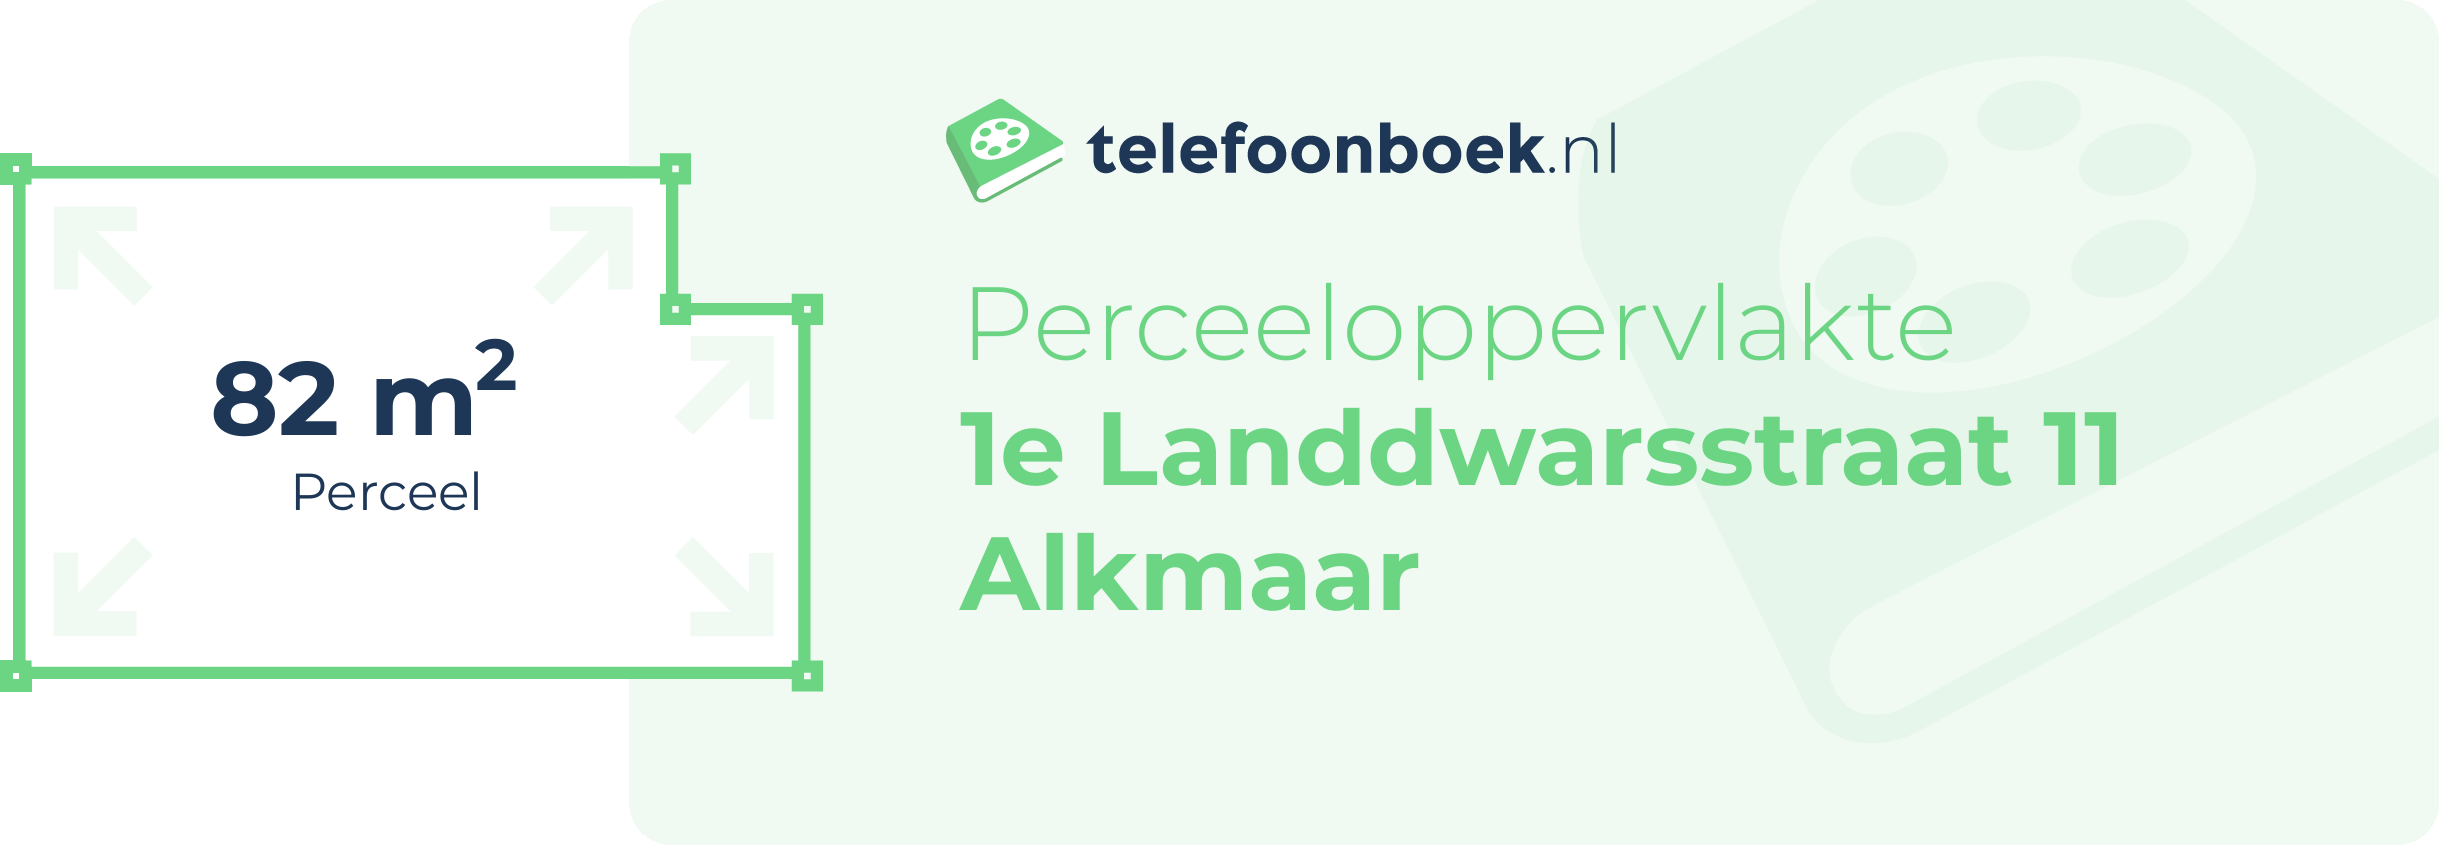 Perceeloppervlakte 1e Landdwarsstraat 11 Alkmaar